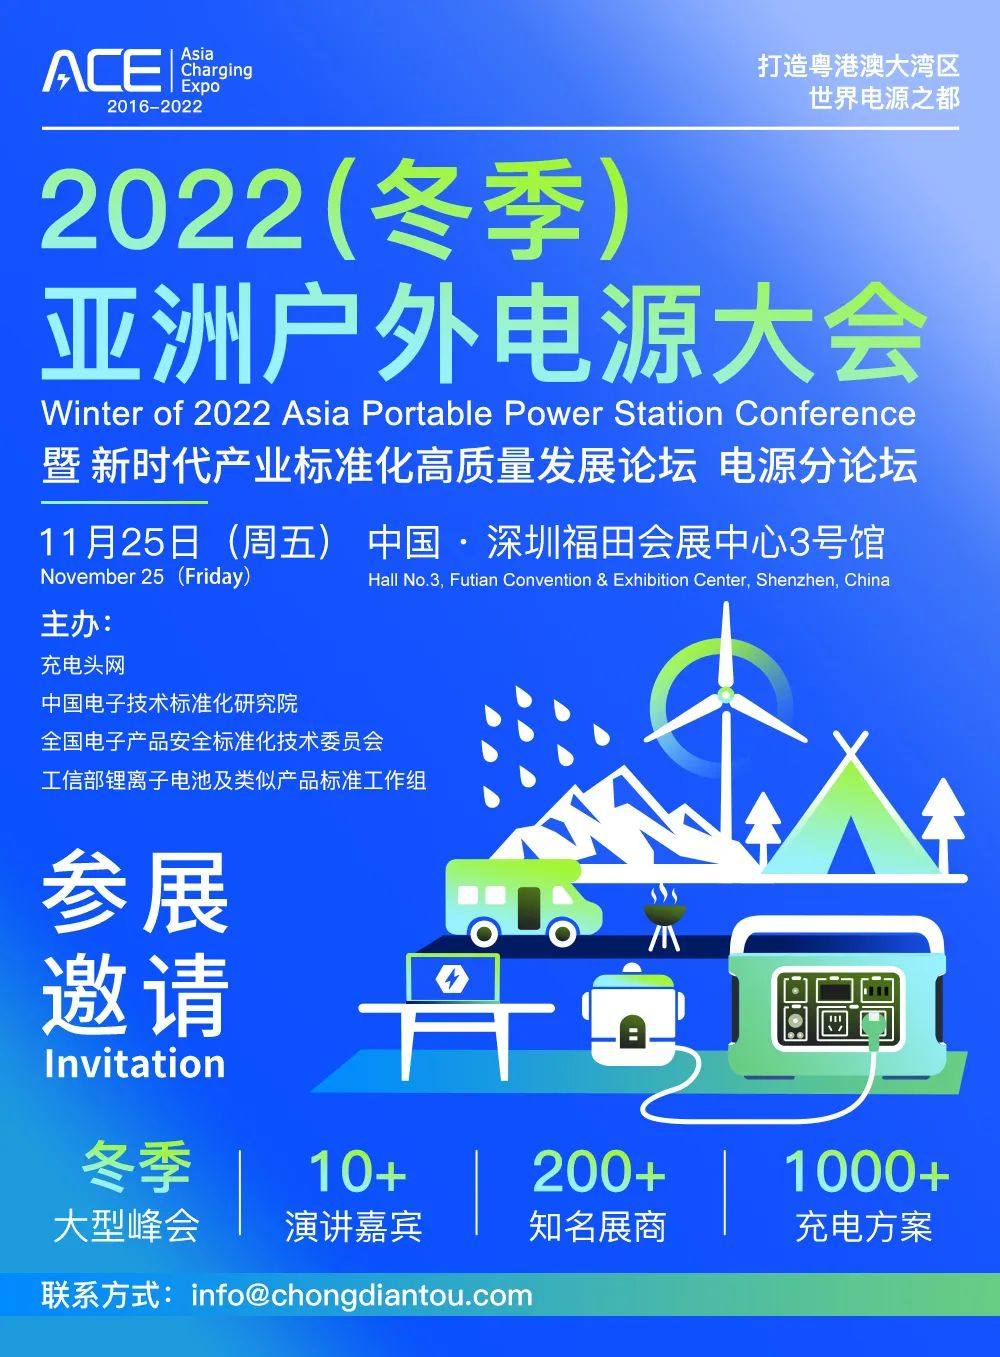 2022（冬季）亚洲户外电源大会参会邀请-亚洲充电展